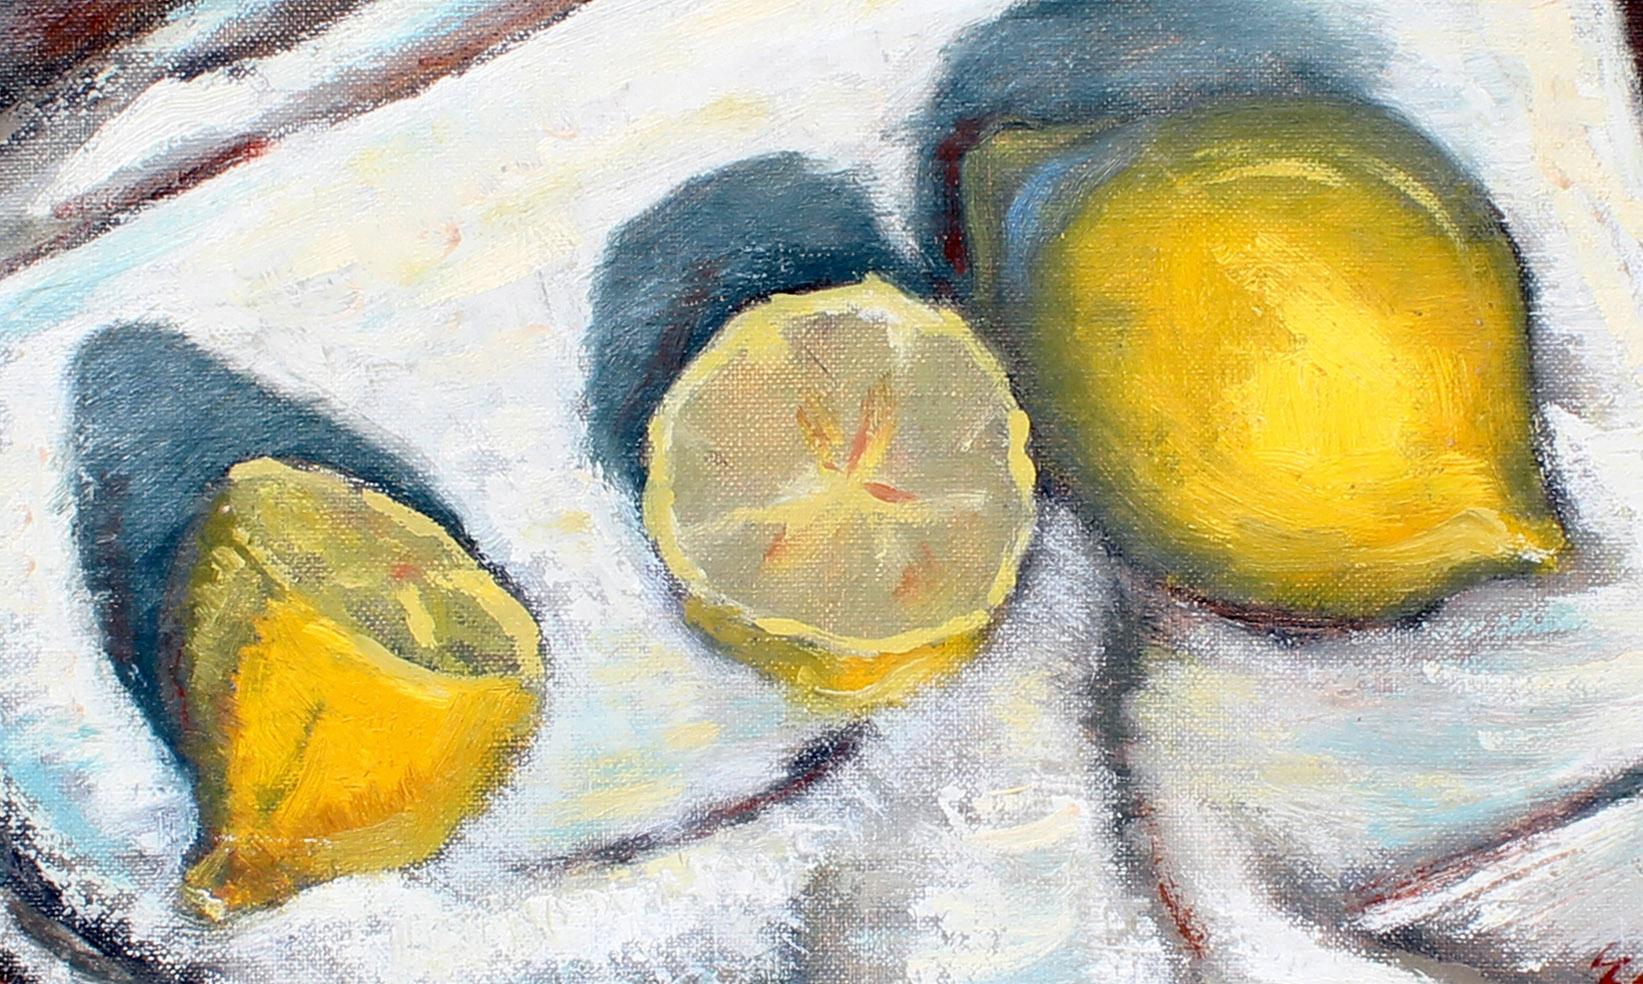 wilbert lemons